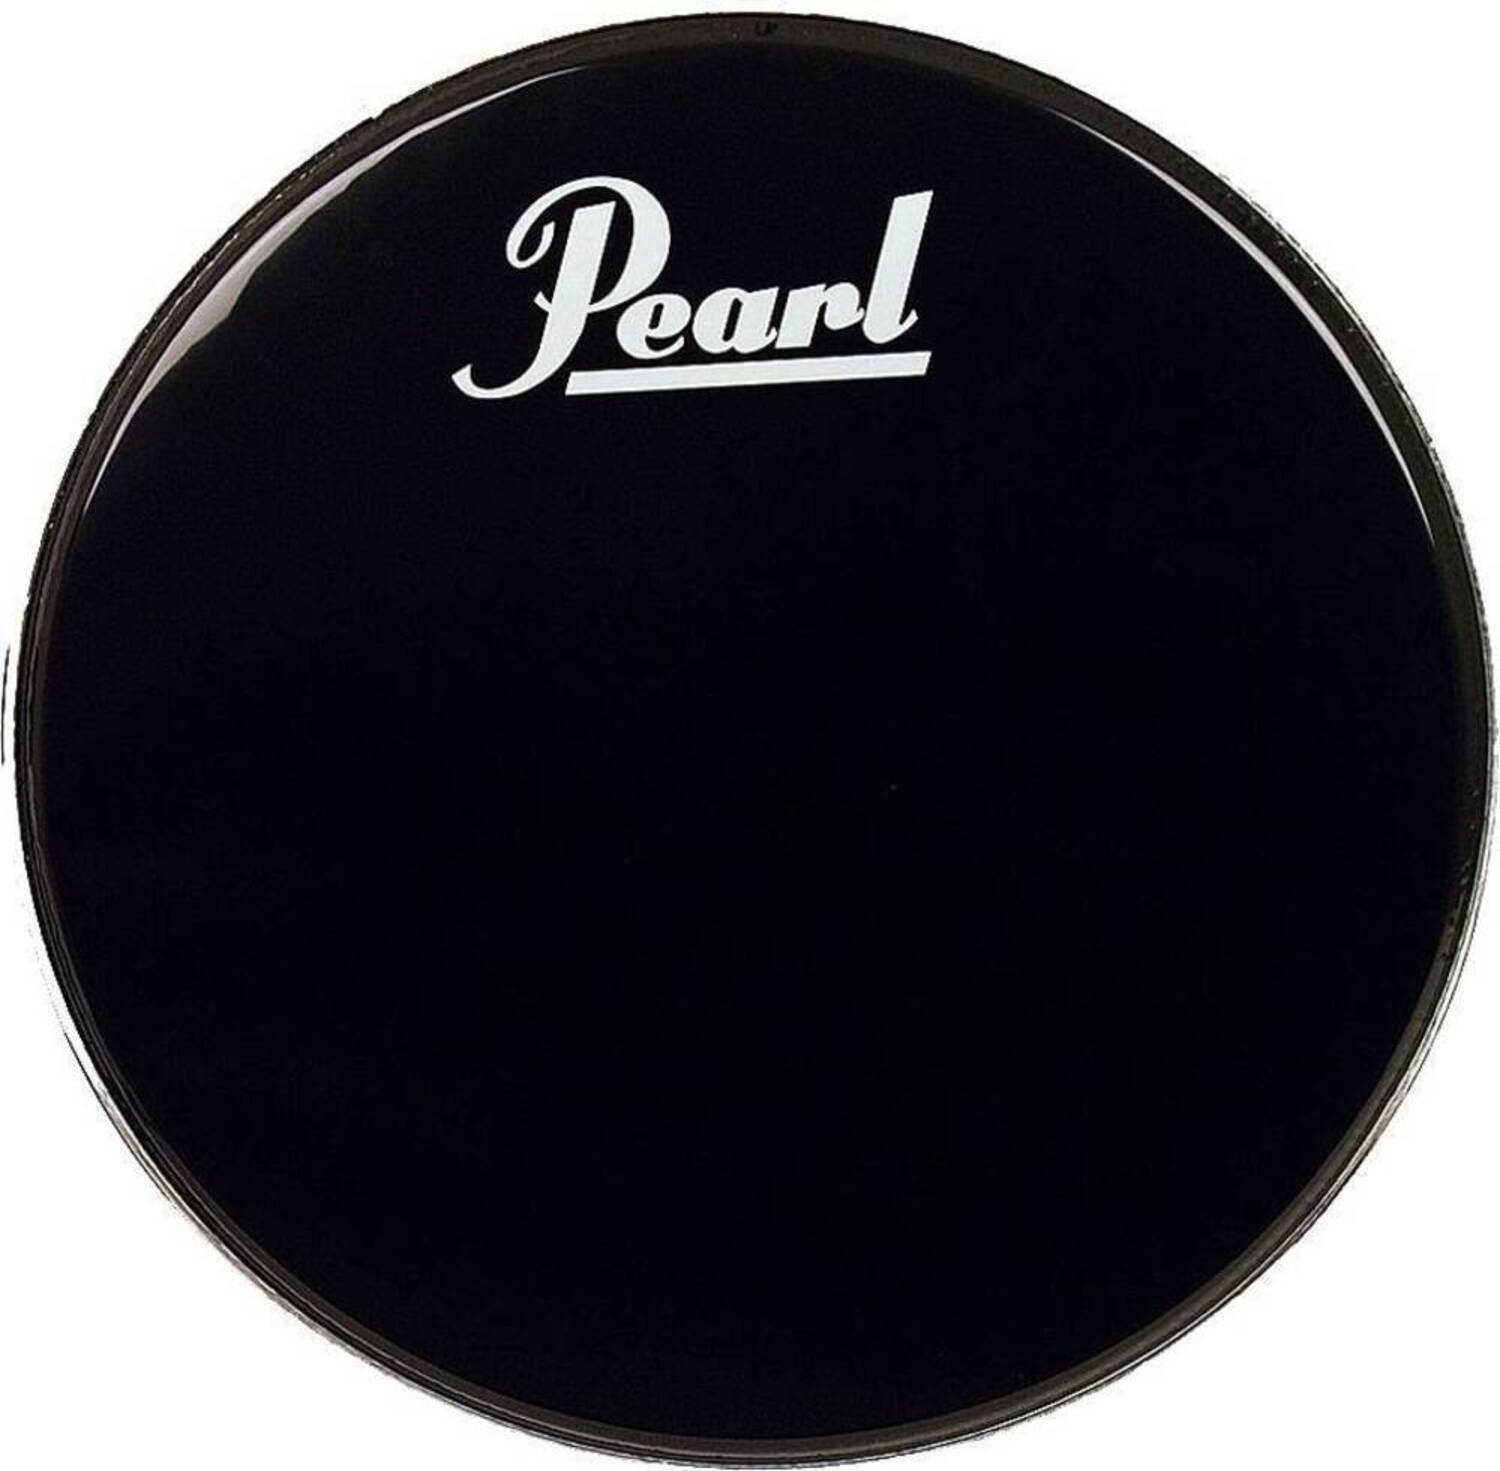 Прочие аксессуары для ударных инструментов Pearl EB-24BDPL стойки для ударных инструментов pearl ch 1030c